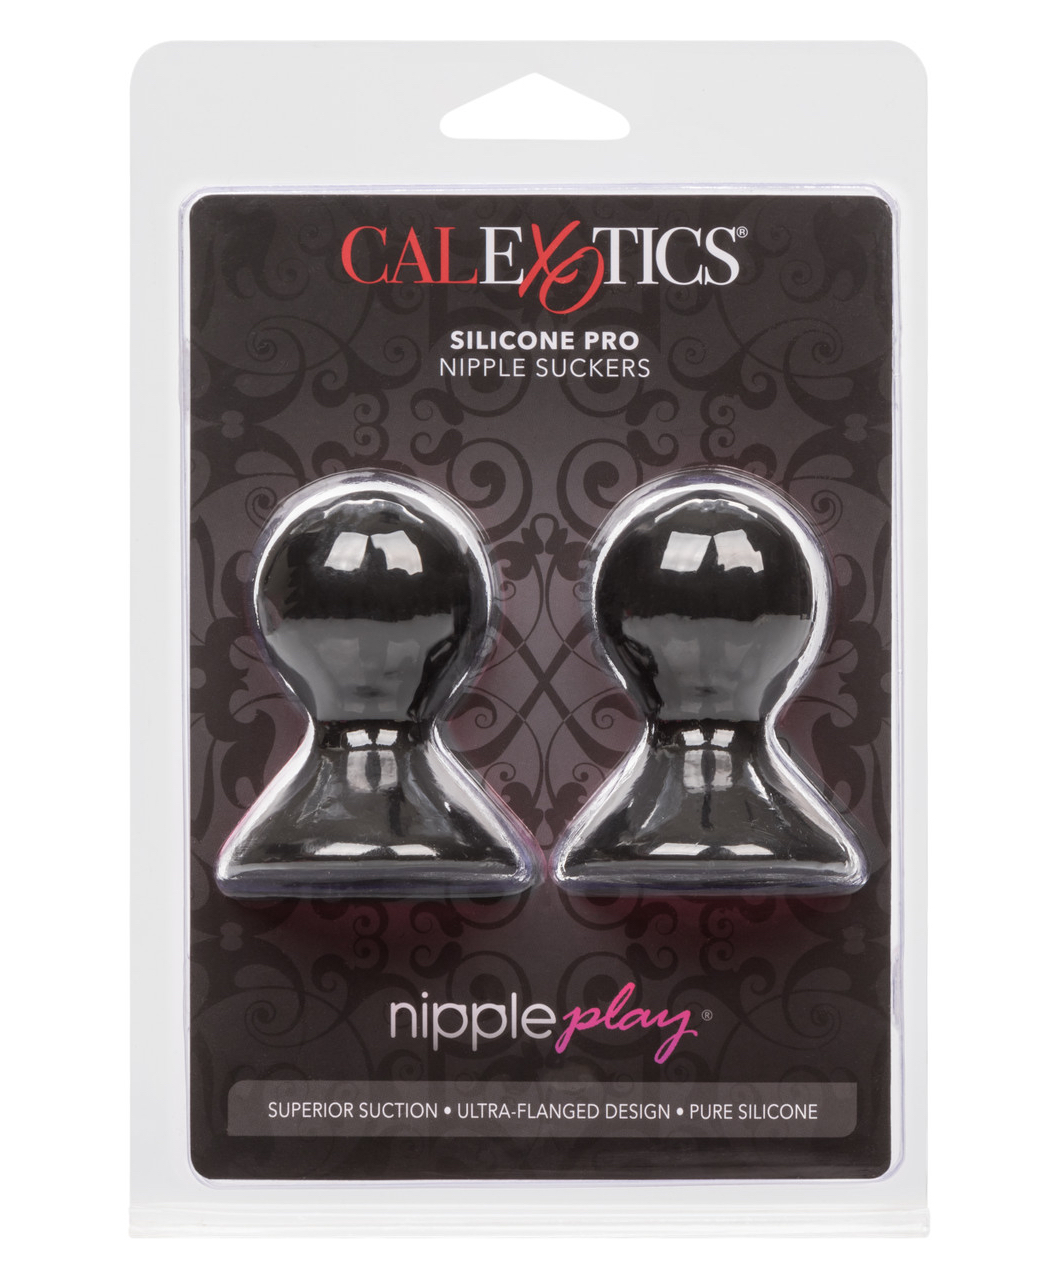 CalExotics Nipple Play силиконовые мини-помпы для сосков